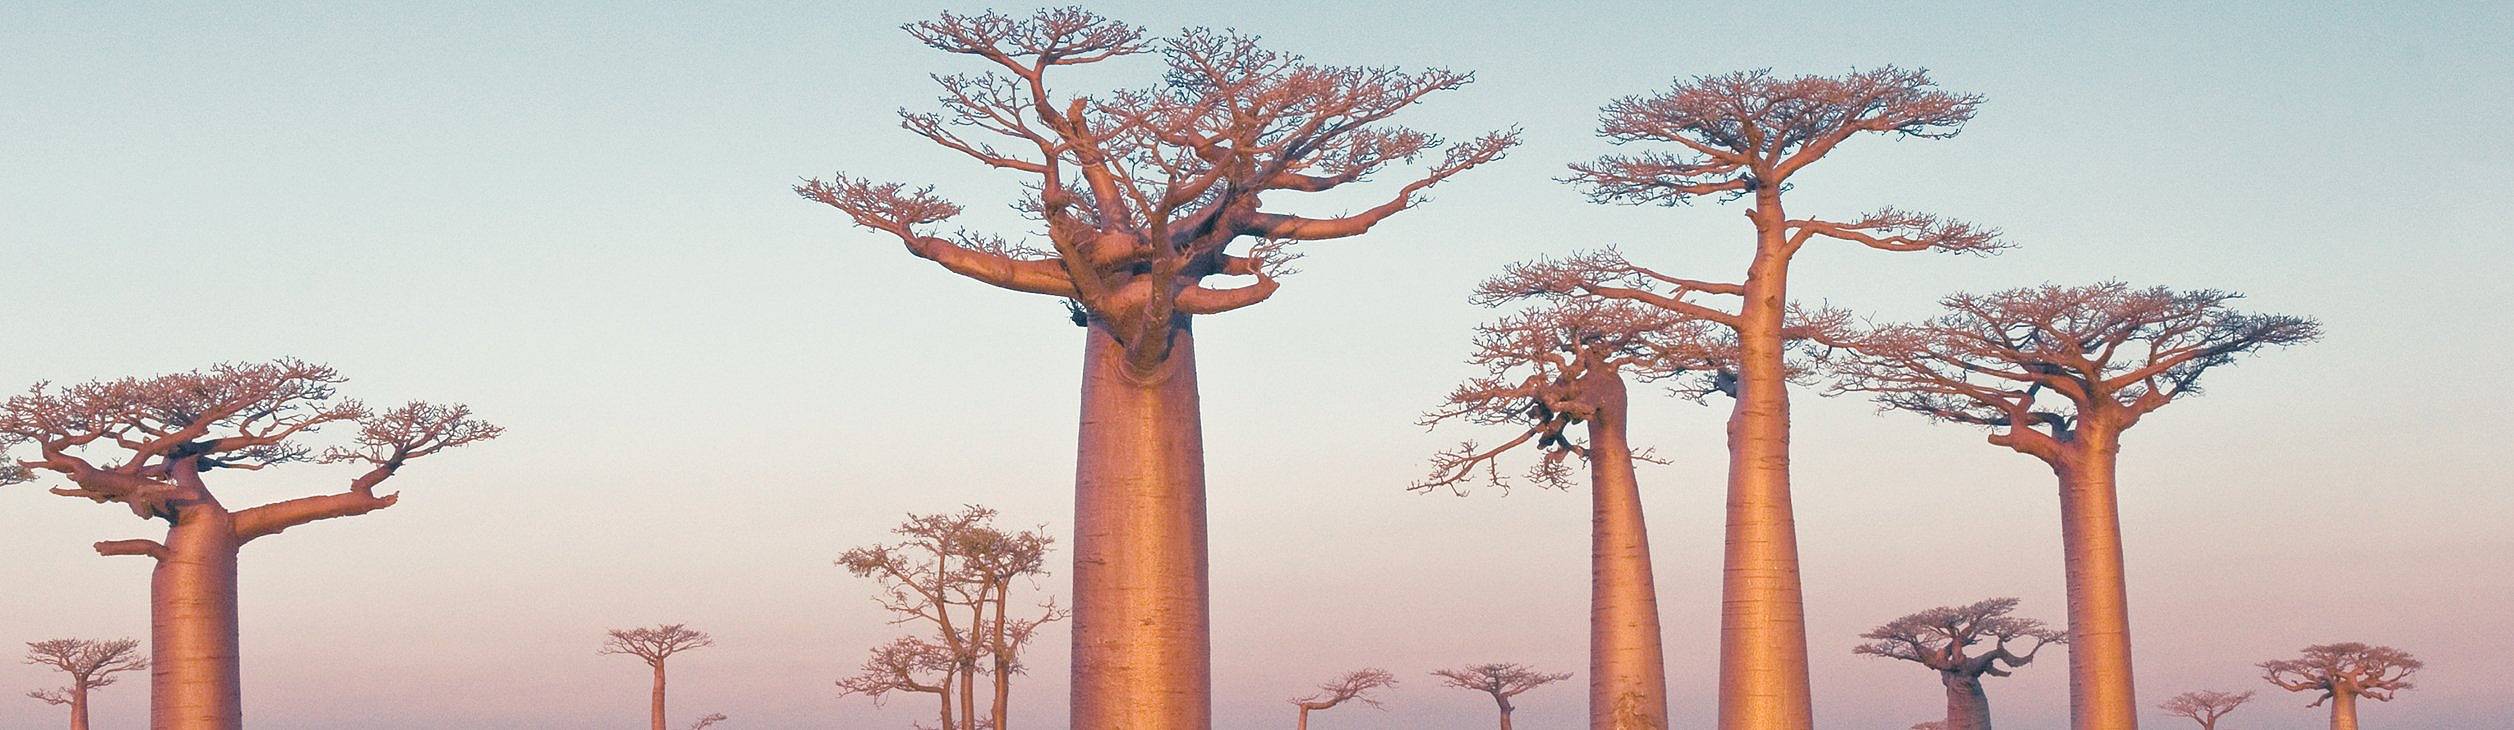 Viajes a Madagascar en primavera